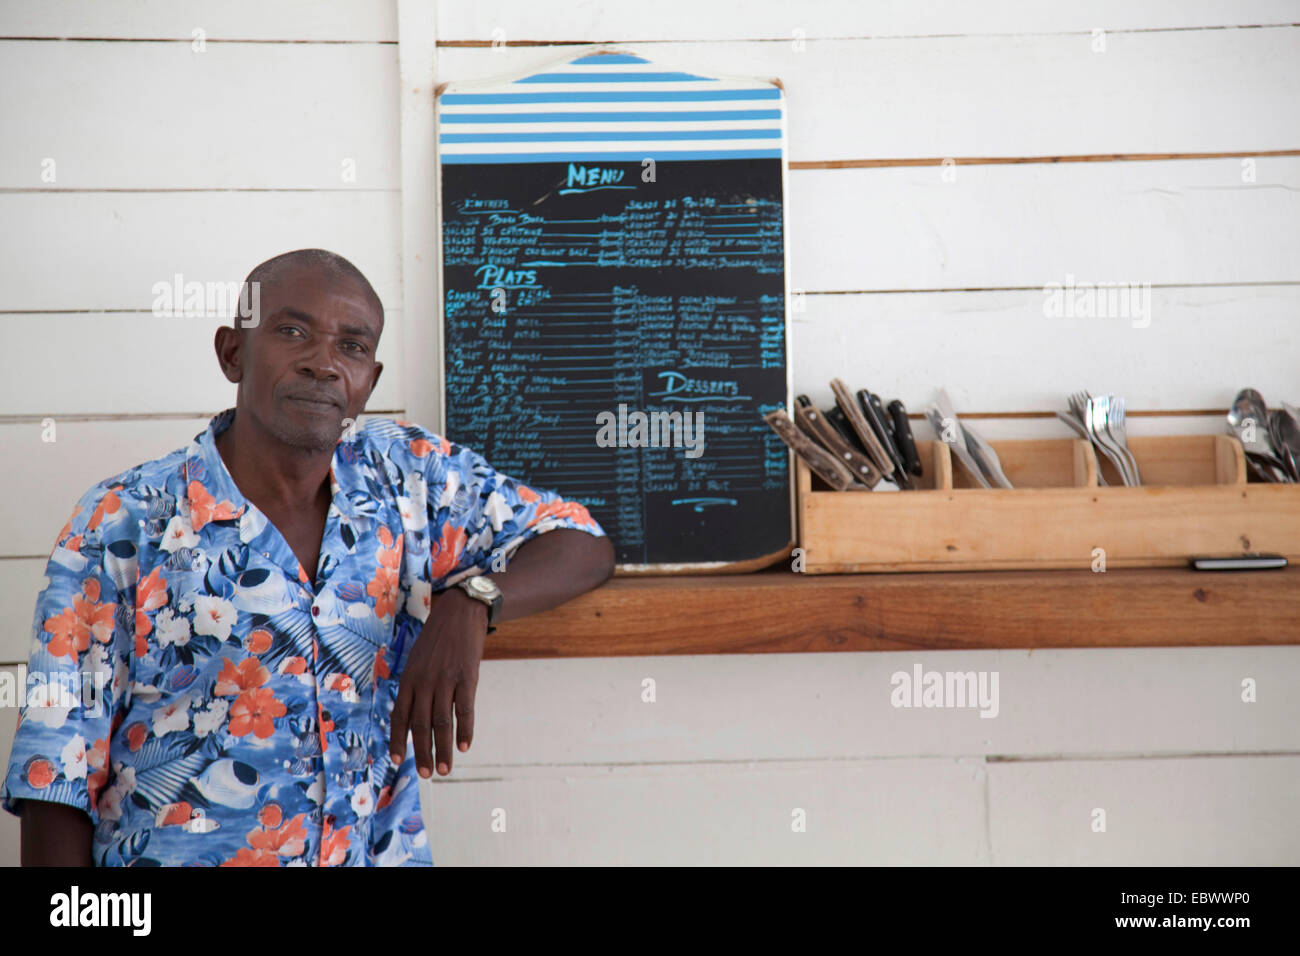 man standing at a counter with flatware and menu, Burundi, Bujumbura Mairie, Bujumbura Stock Photo